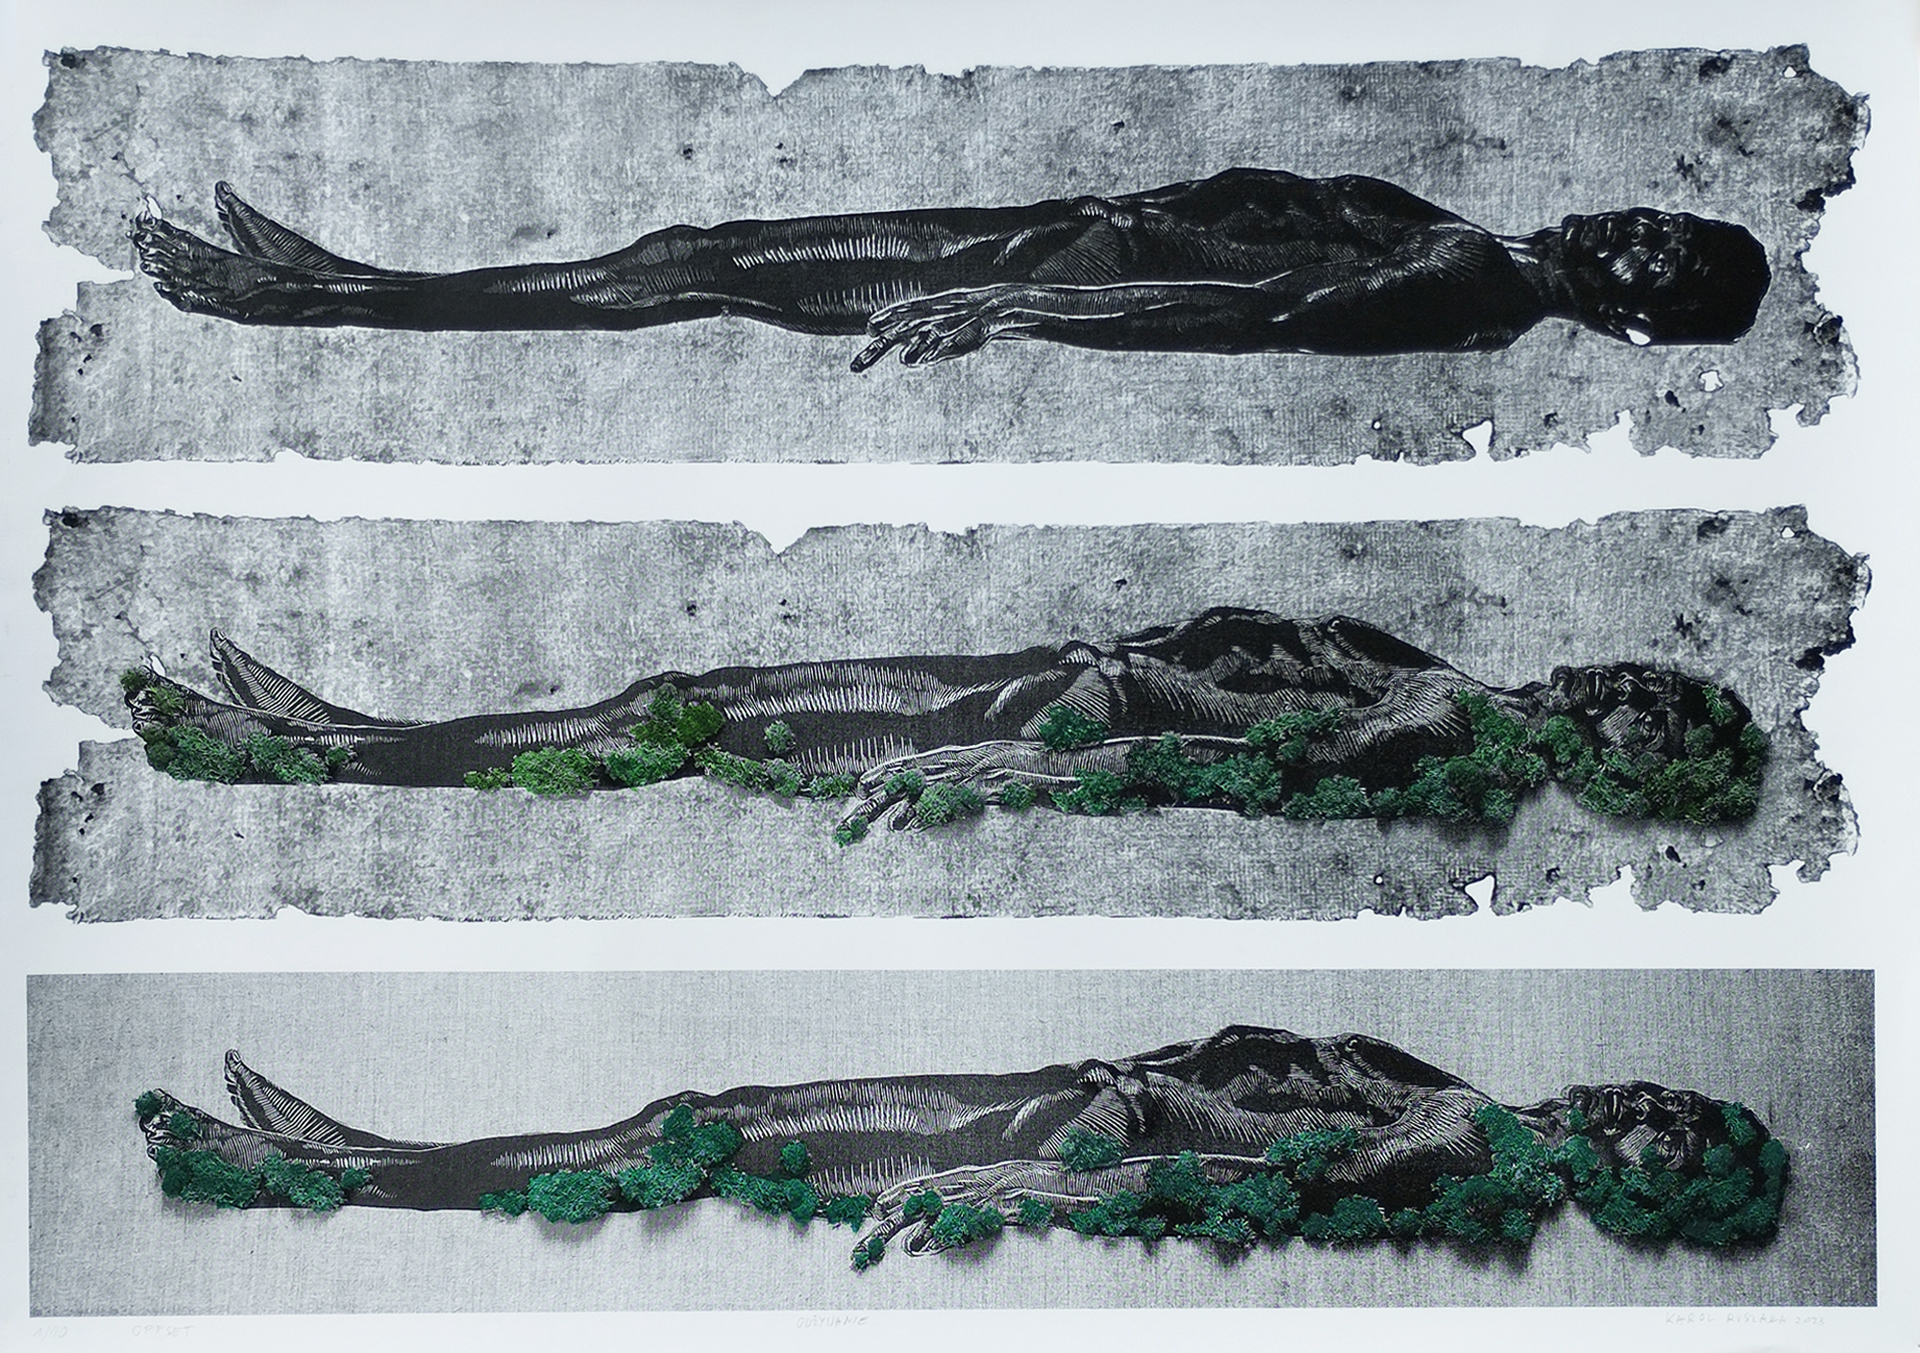 Obraz przedstawia trzy powtórzone, czarno białe rysunki leżącej postaci, jeden pod drugim. Do rysunków dodane są kępy zielonego mchu.